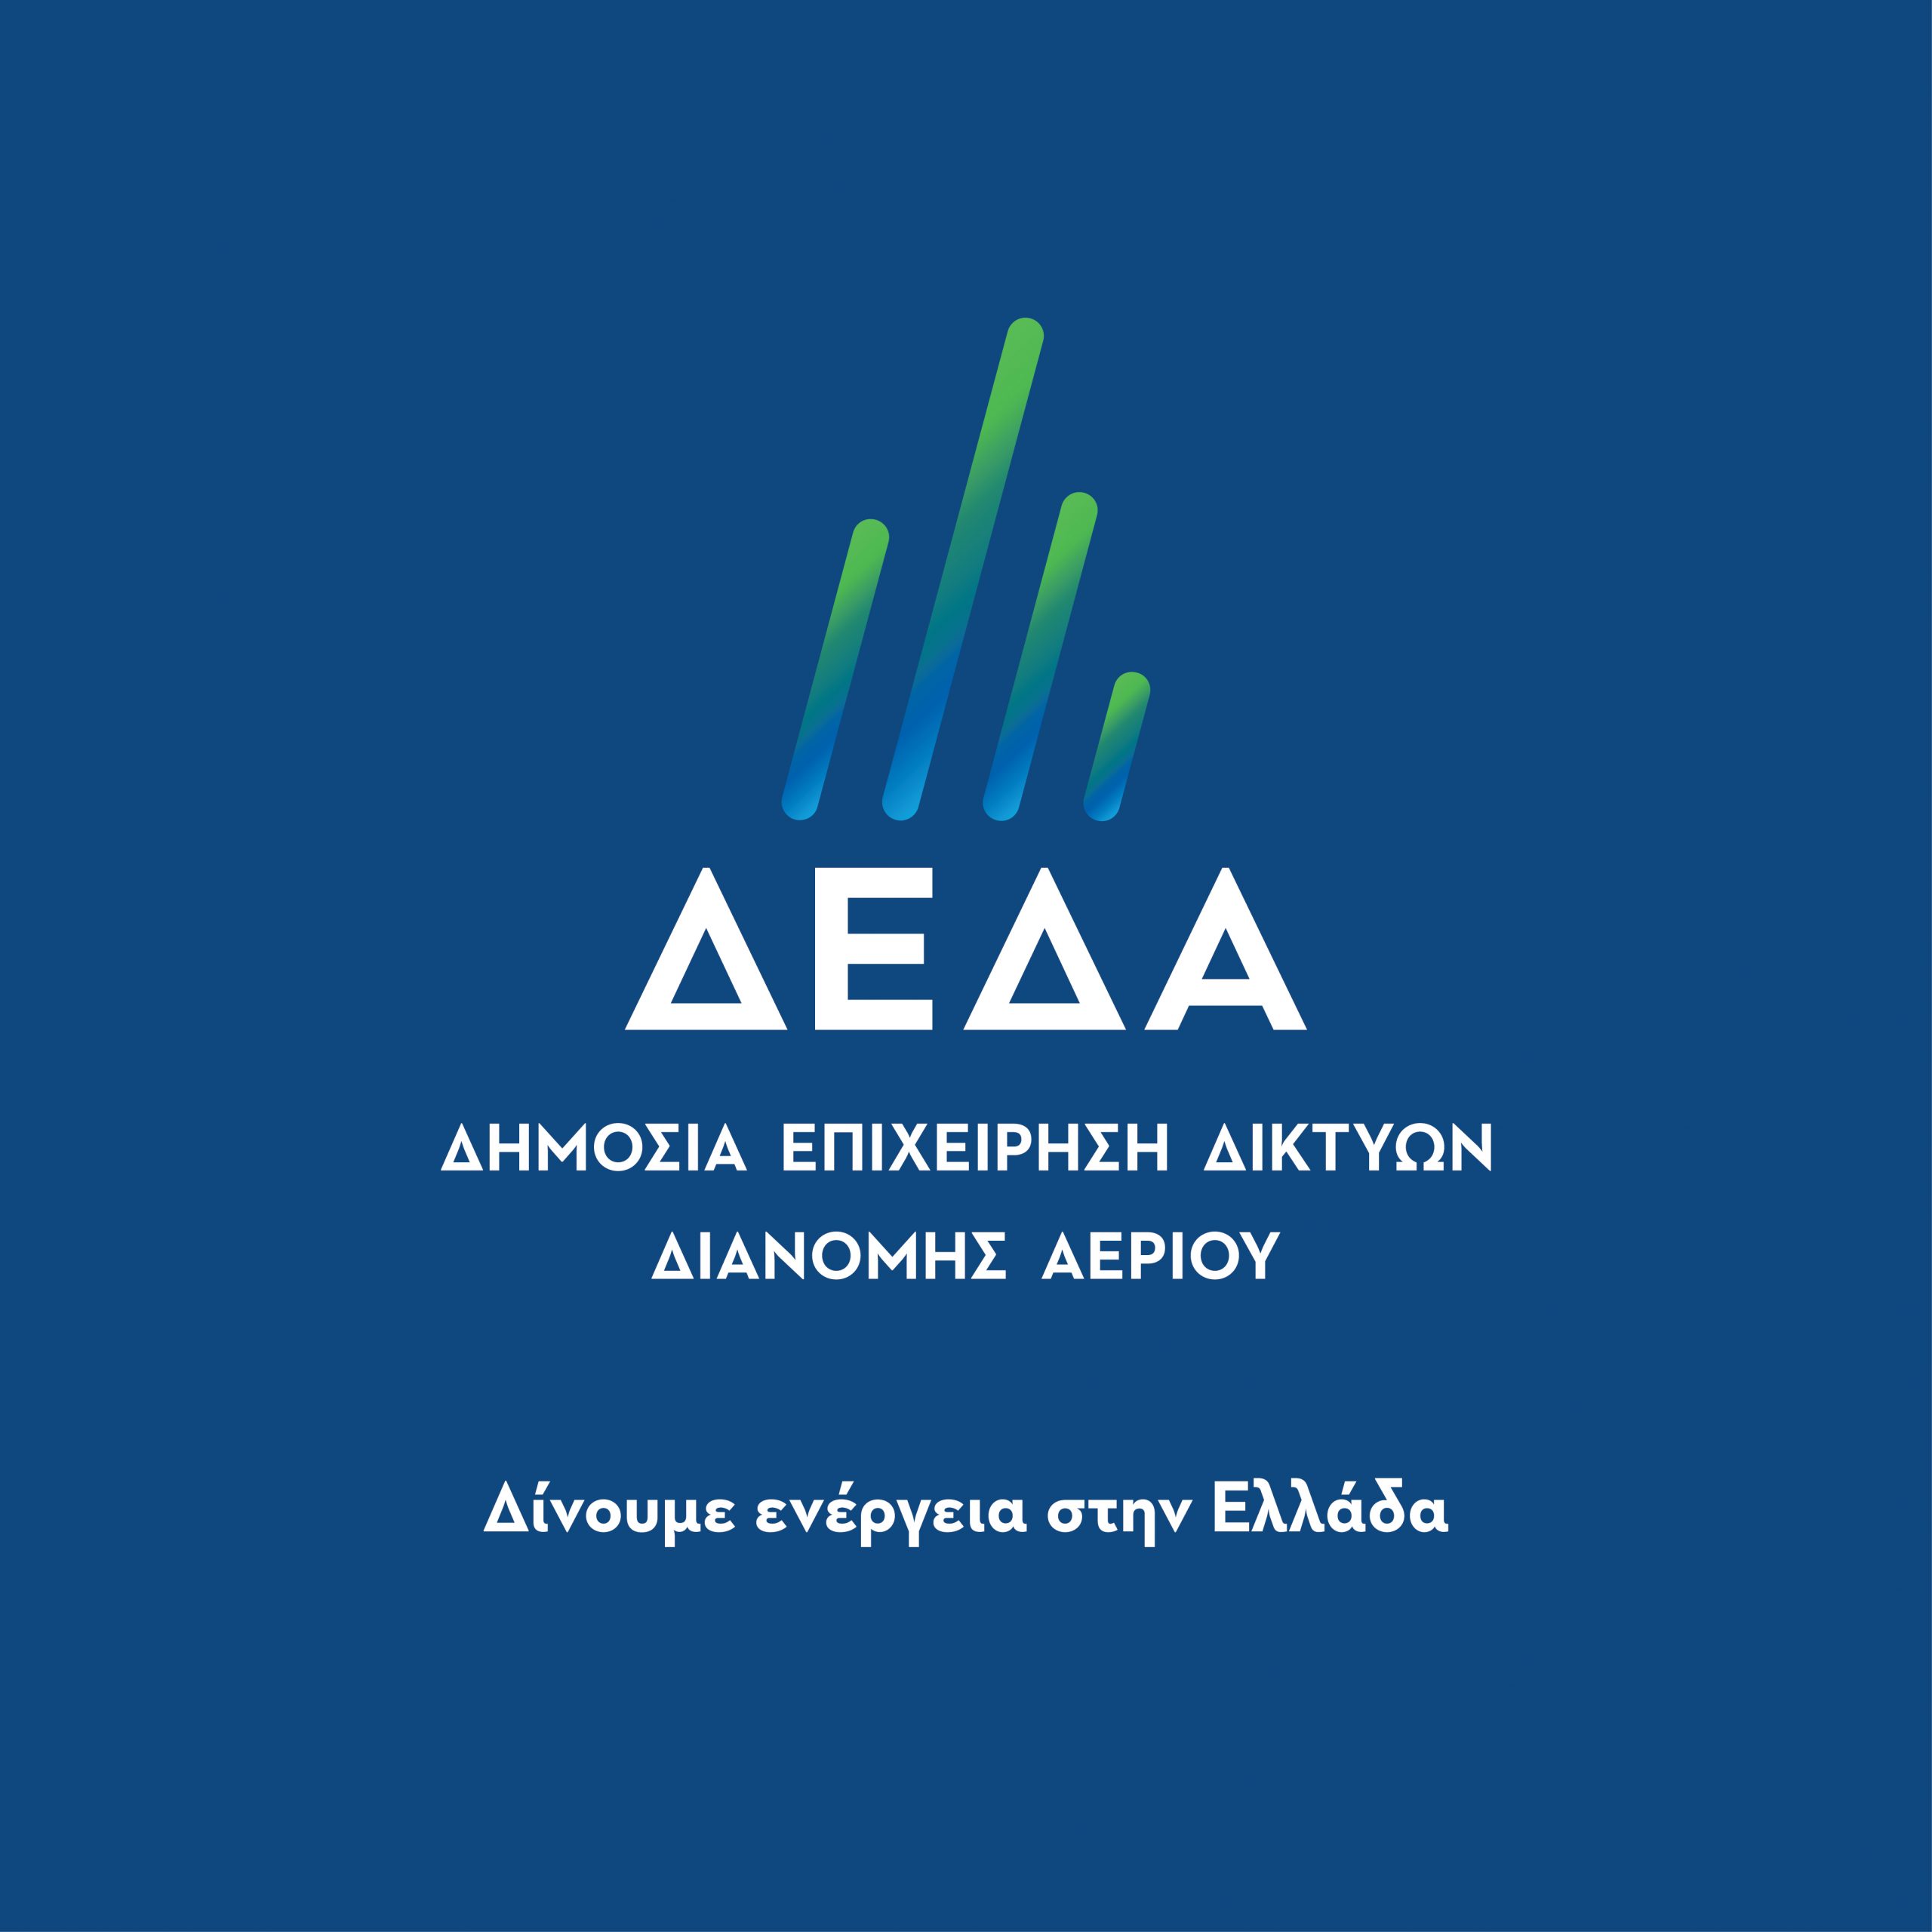 ΔΕΔΑ: Τα εργοτάξια που στήνονται στη βόρεια Ελλάδα